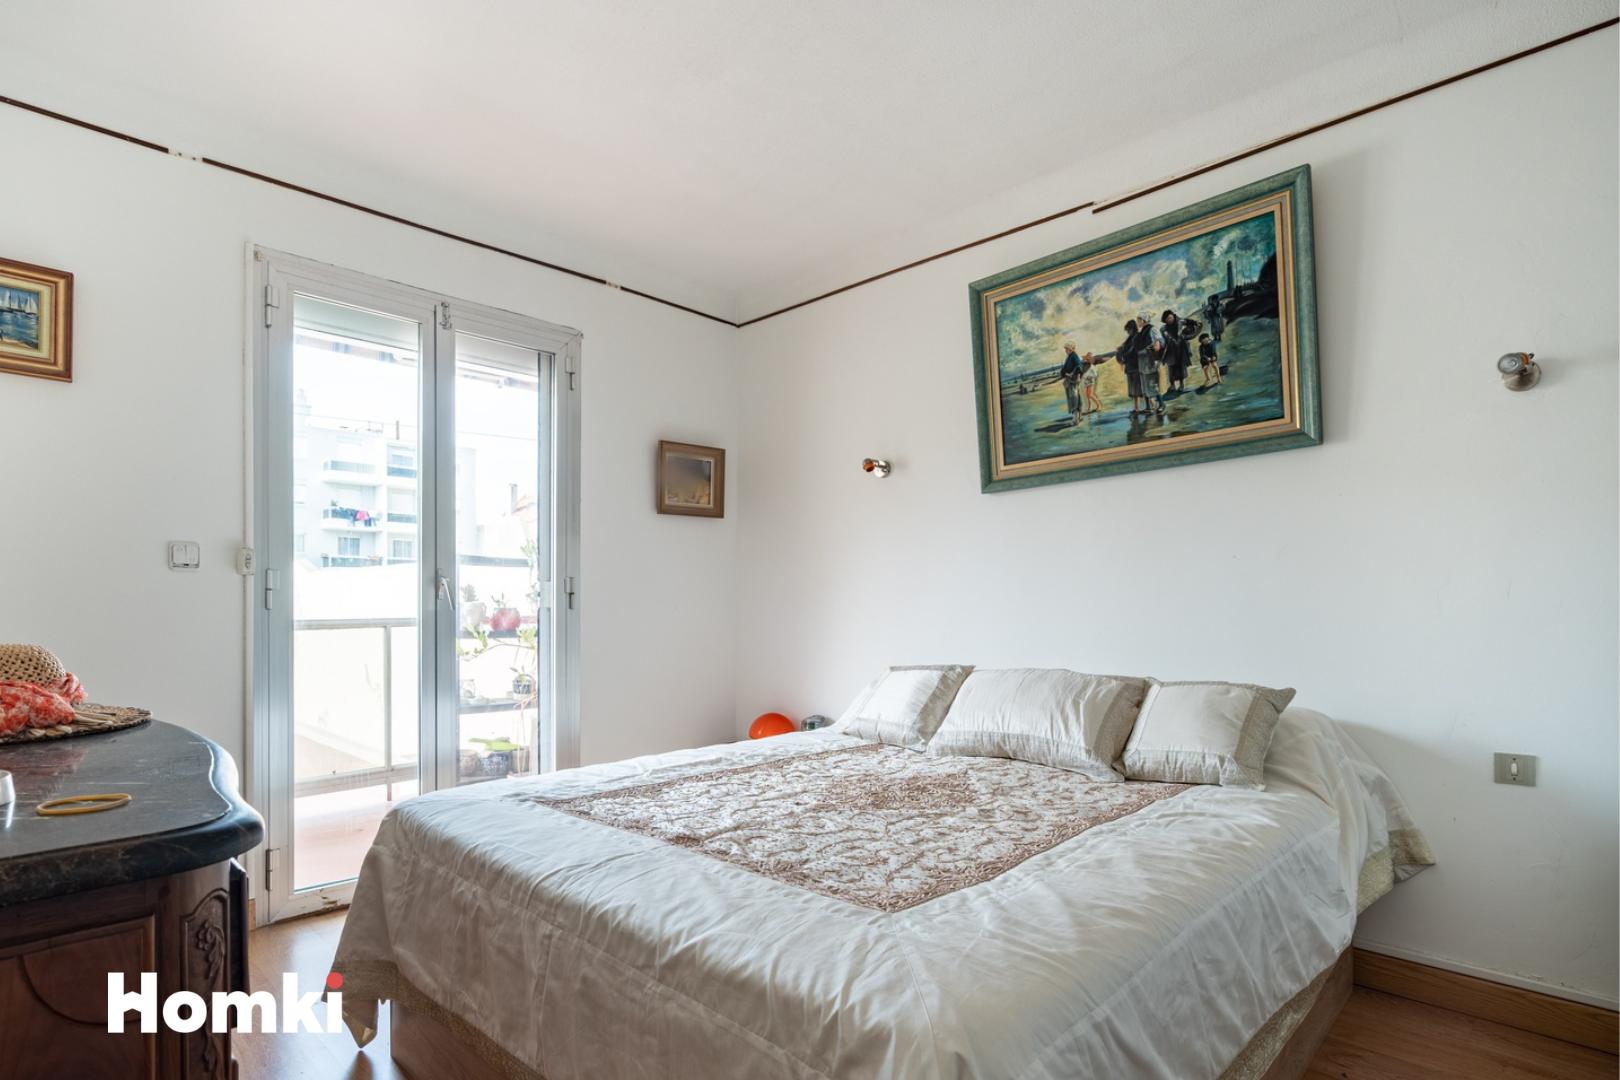 Homki - Vente Appartement  de 92.0 m² à Sète 34200